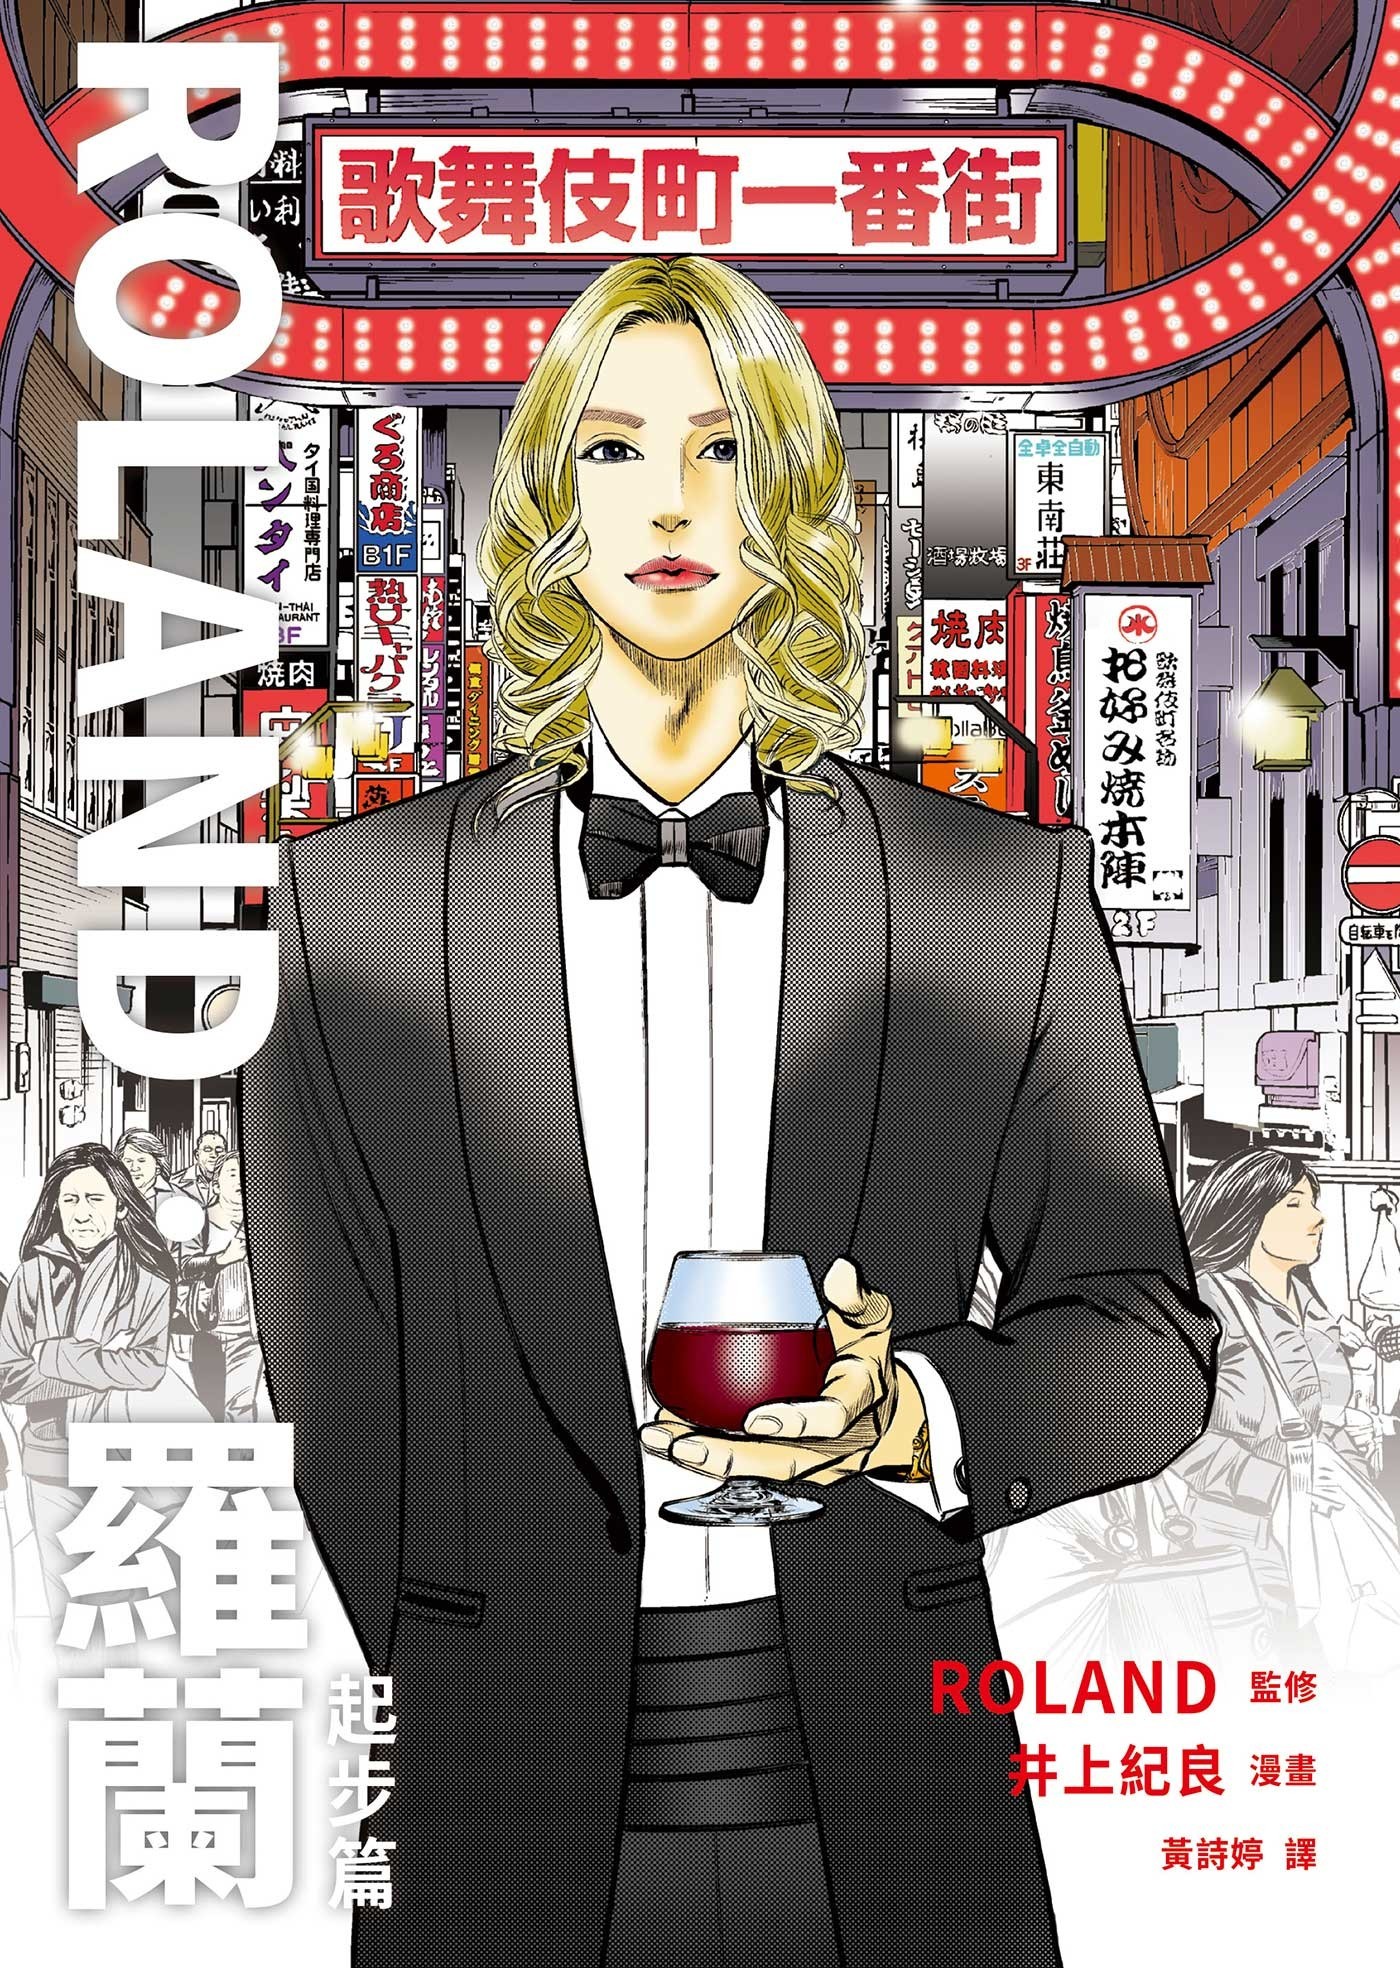 日本男公關傳奇的起點《ROLAND‧羅蘭》漫畫將於 2/1 在台上市